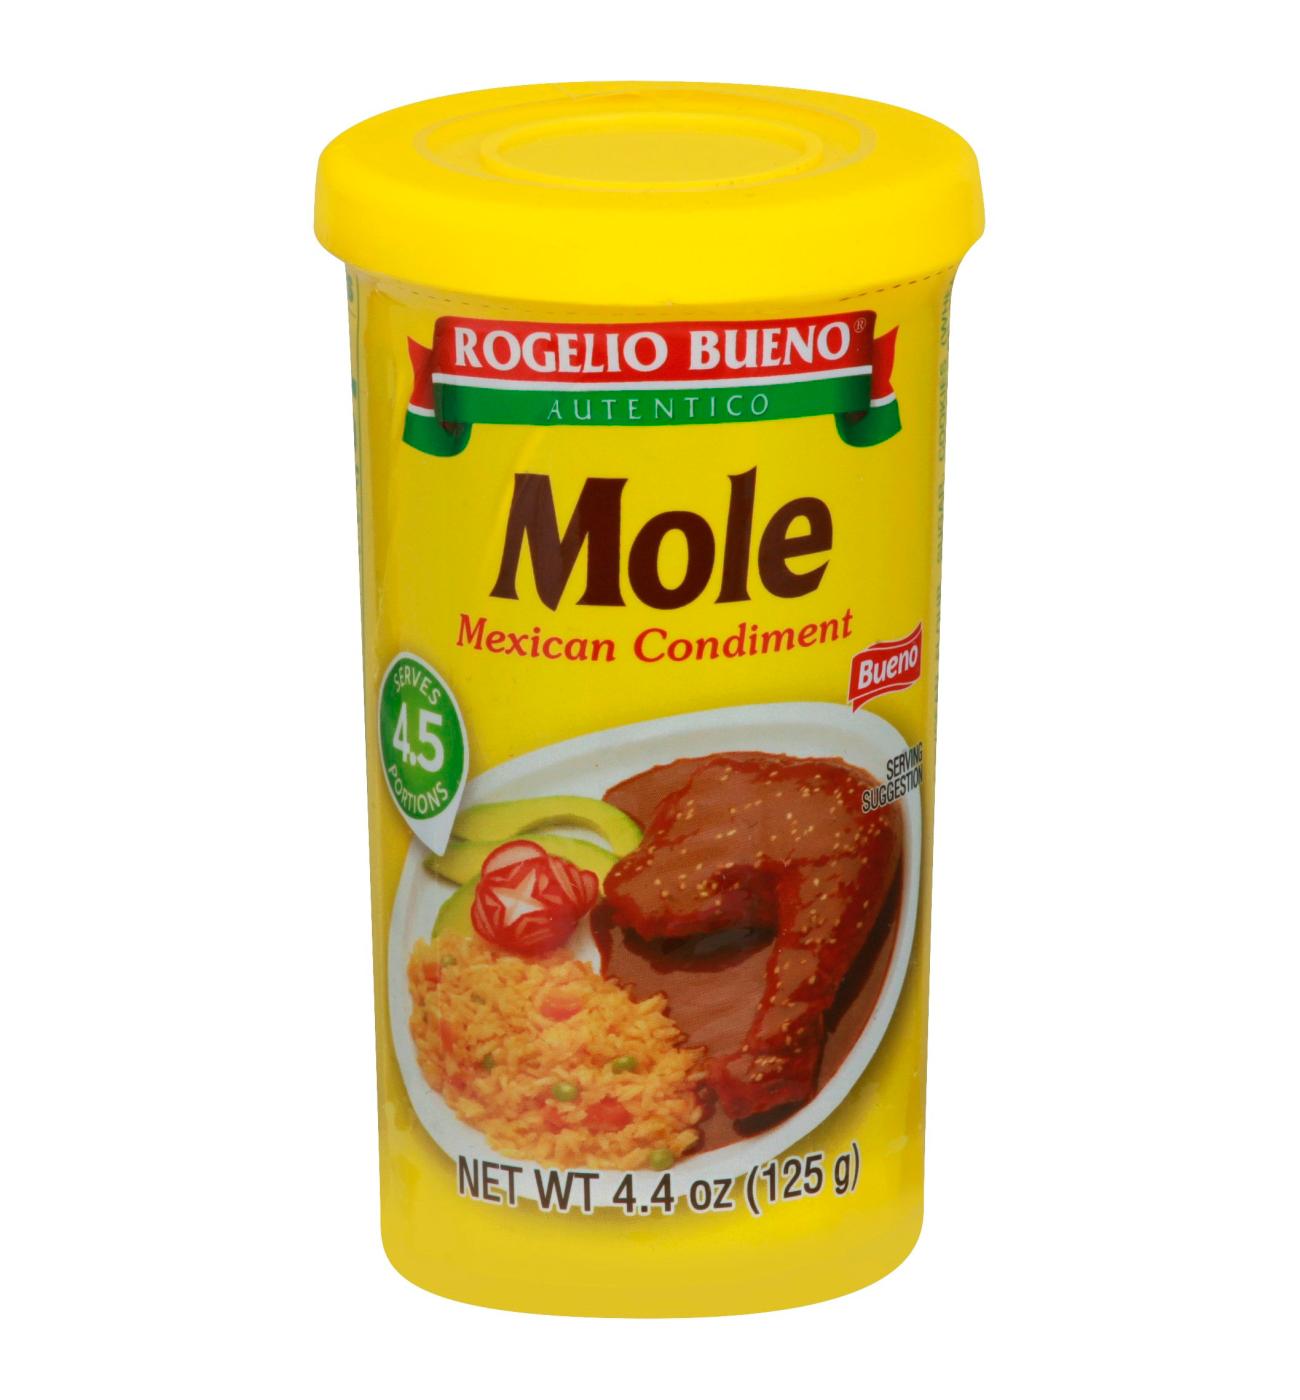 Rogelio Bueno Red Mole Mexican Condiment; image 1 of 2